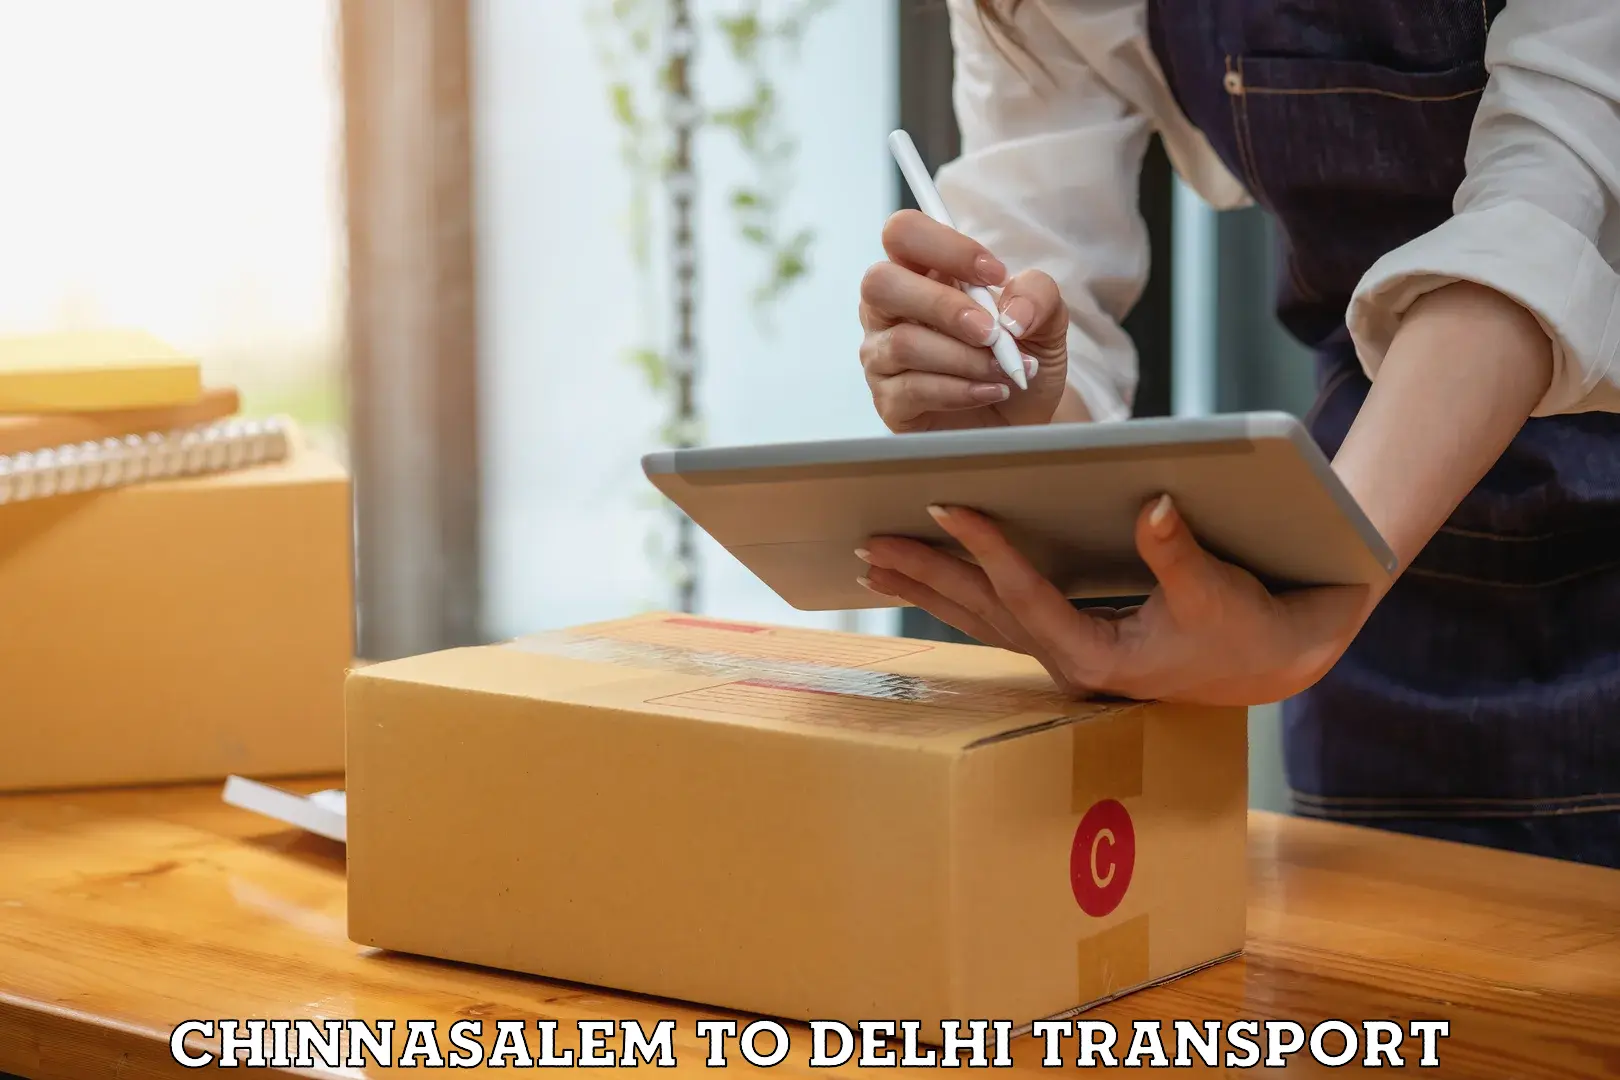 Interstate transport services Chinnasalem to IIT Delhi